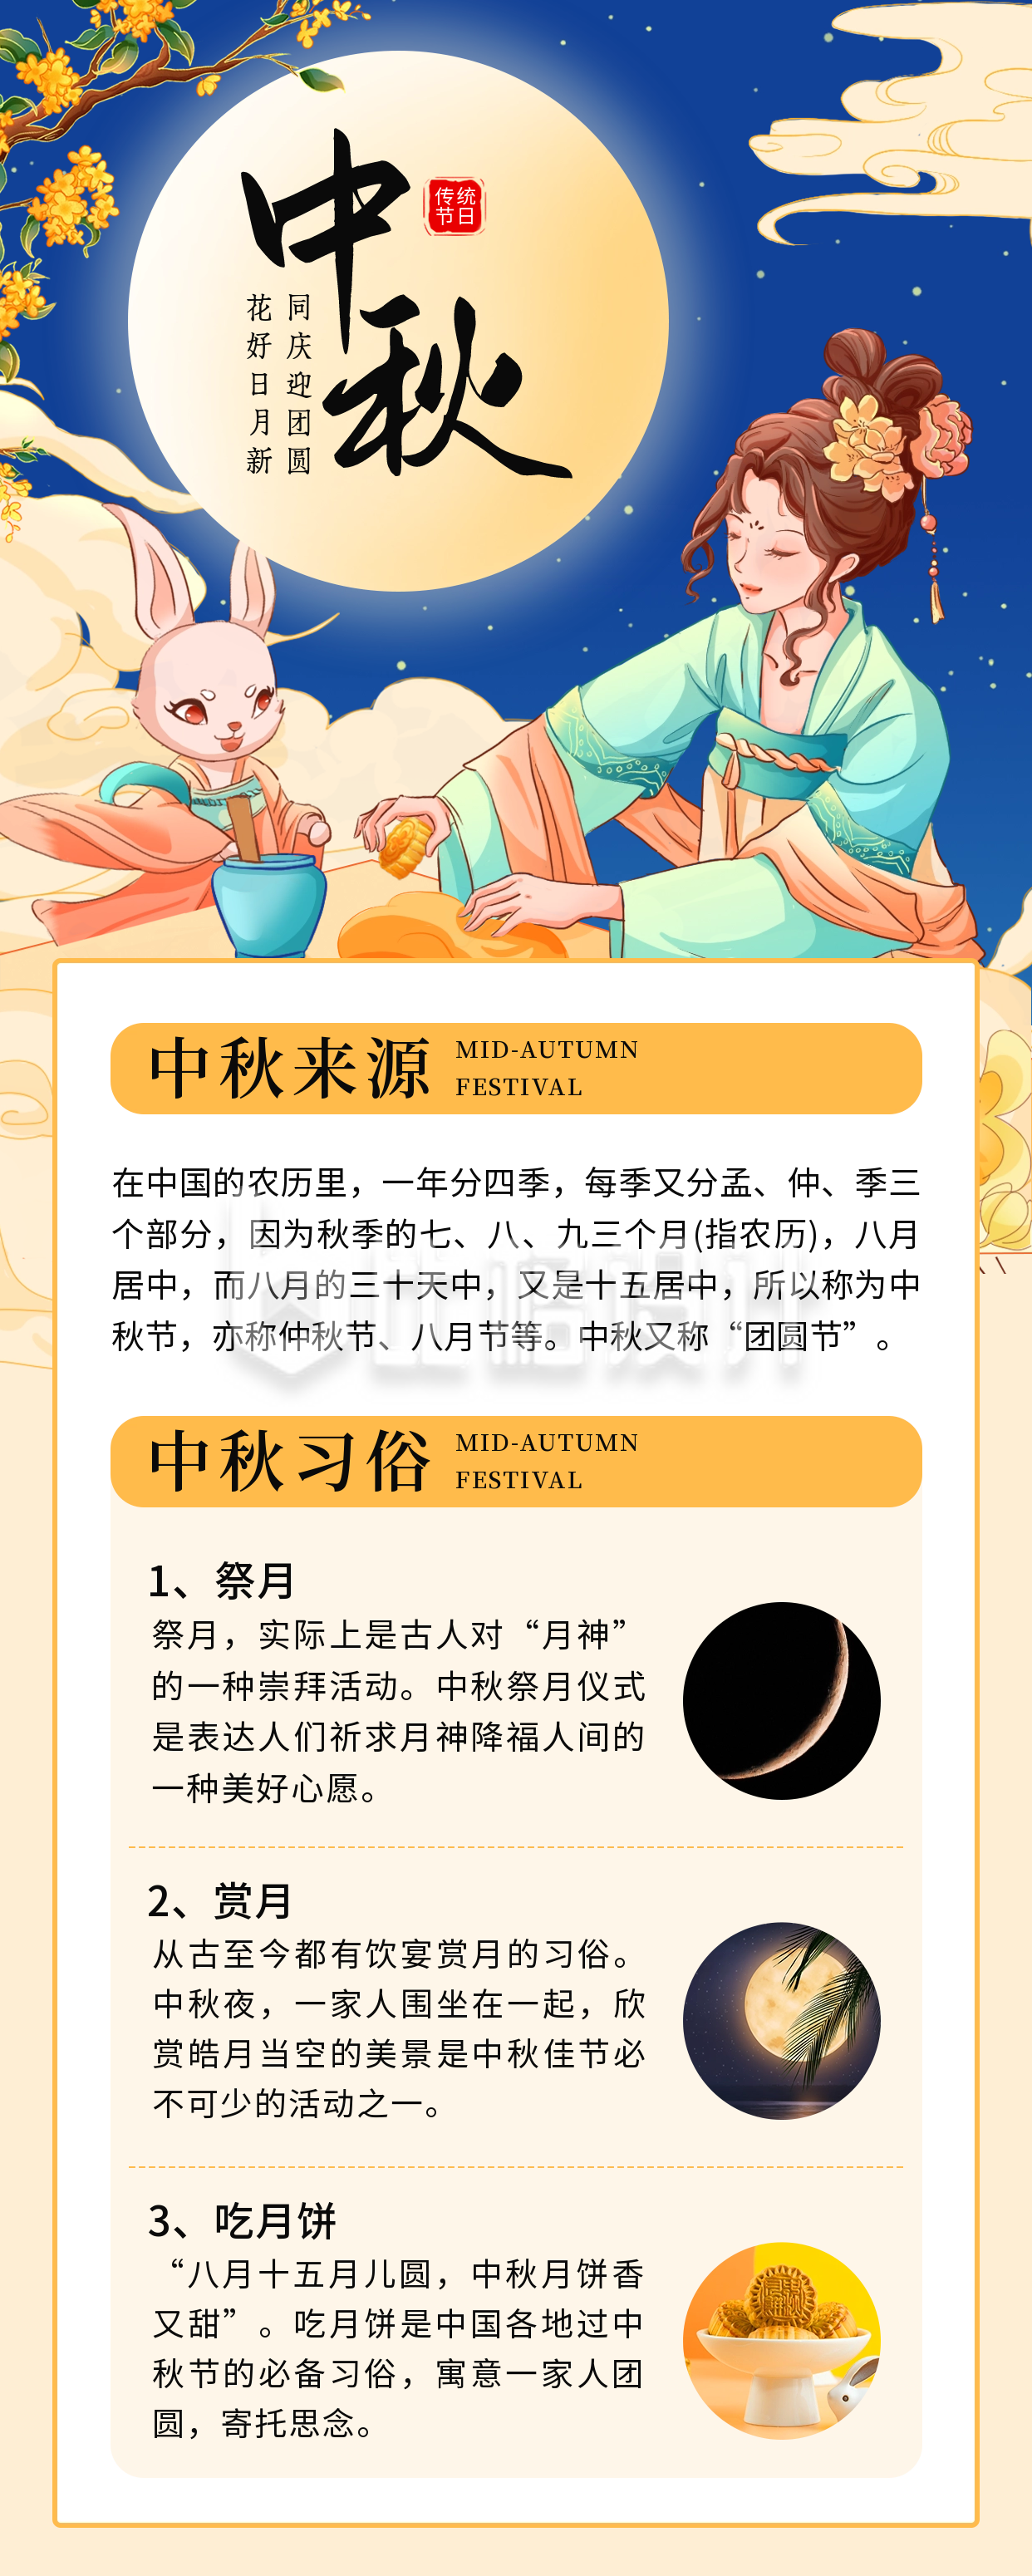 中秋节习俗介绍长图海报